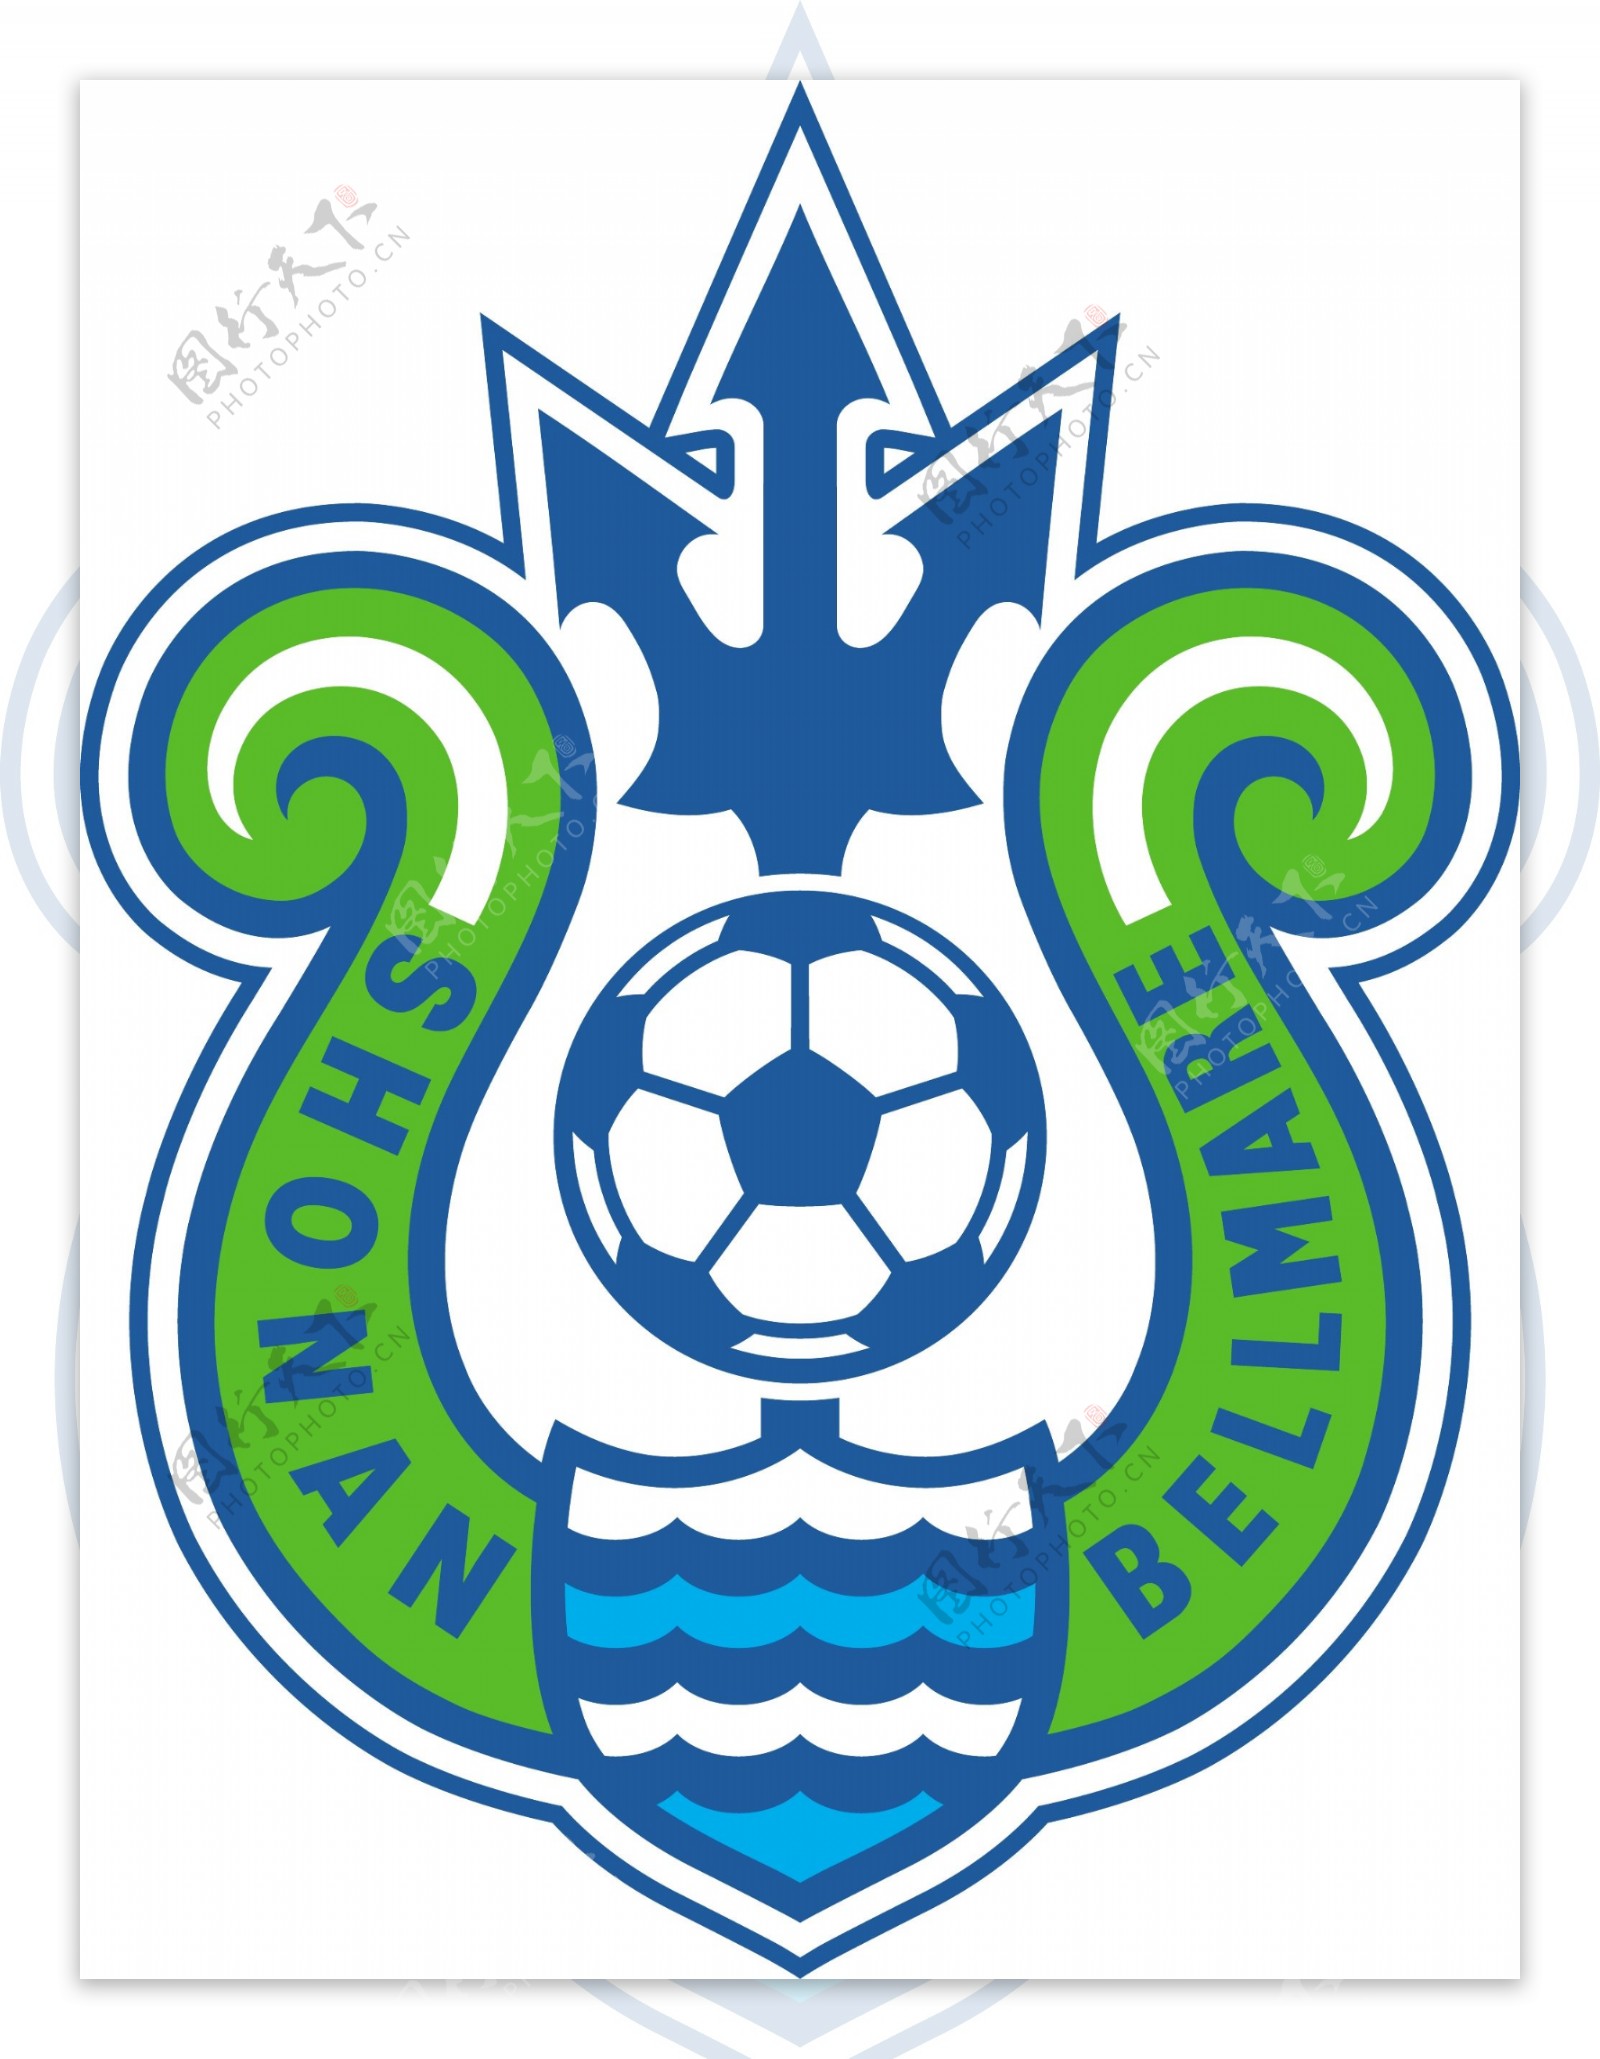 湘南海洋足球俱乐部徽标图片